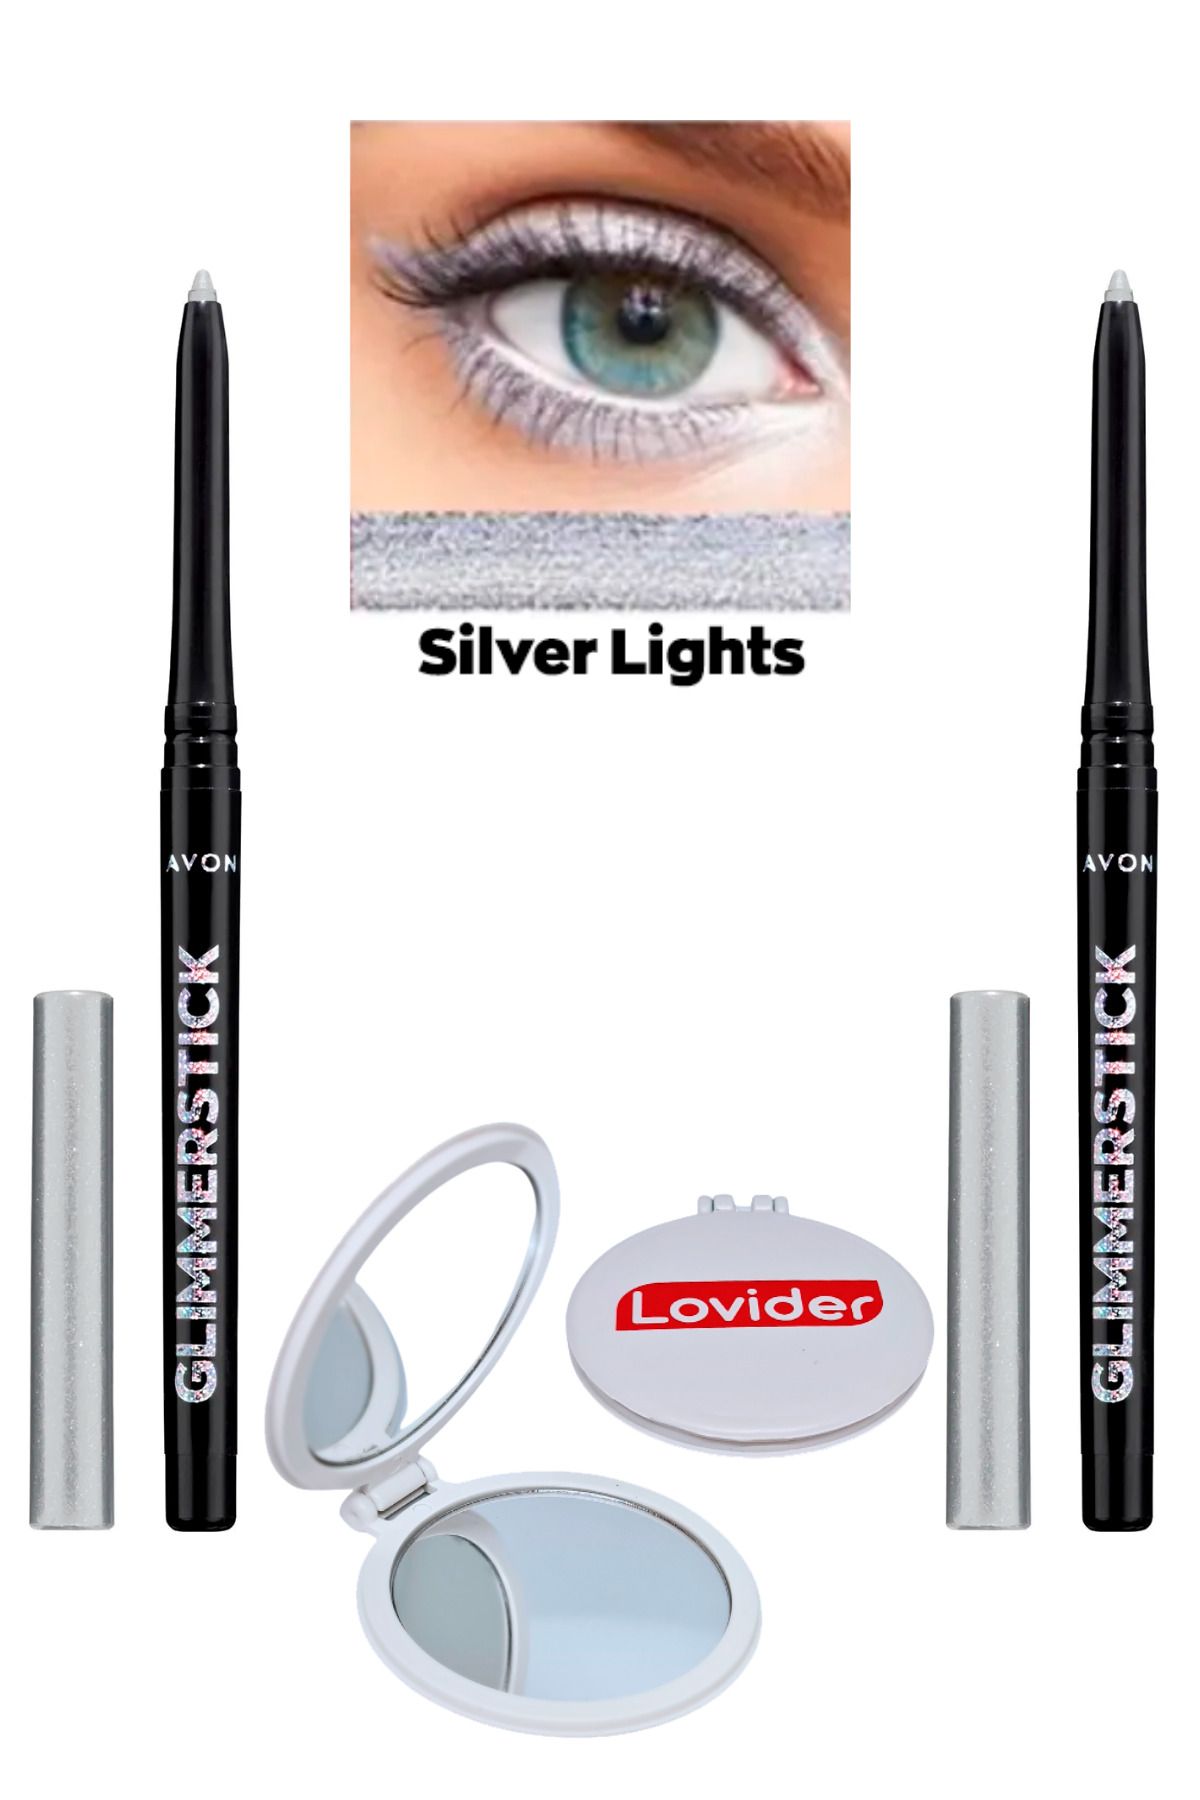 Avon Glimmerstick Asansörlü Göz Kalemi Pırıltılı - Silver Lights 2'li + Lovider Cep Aynası